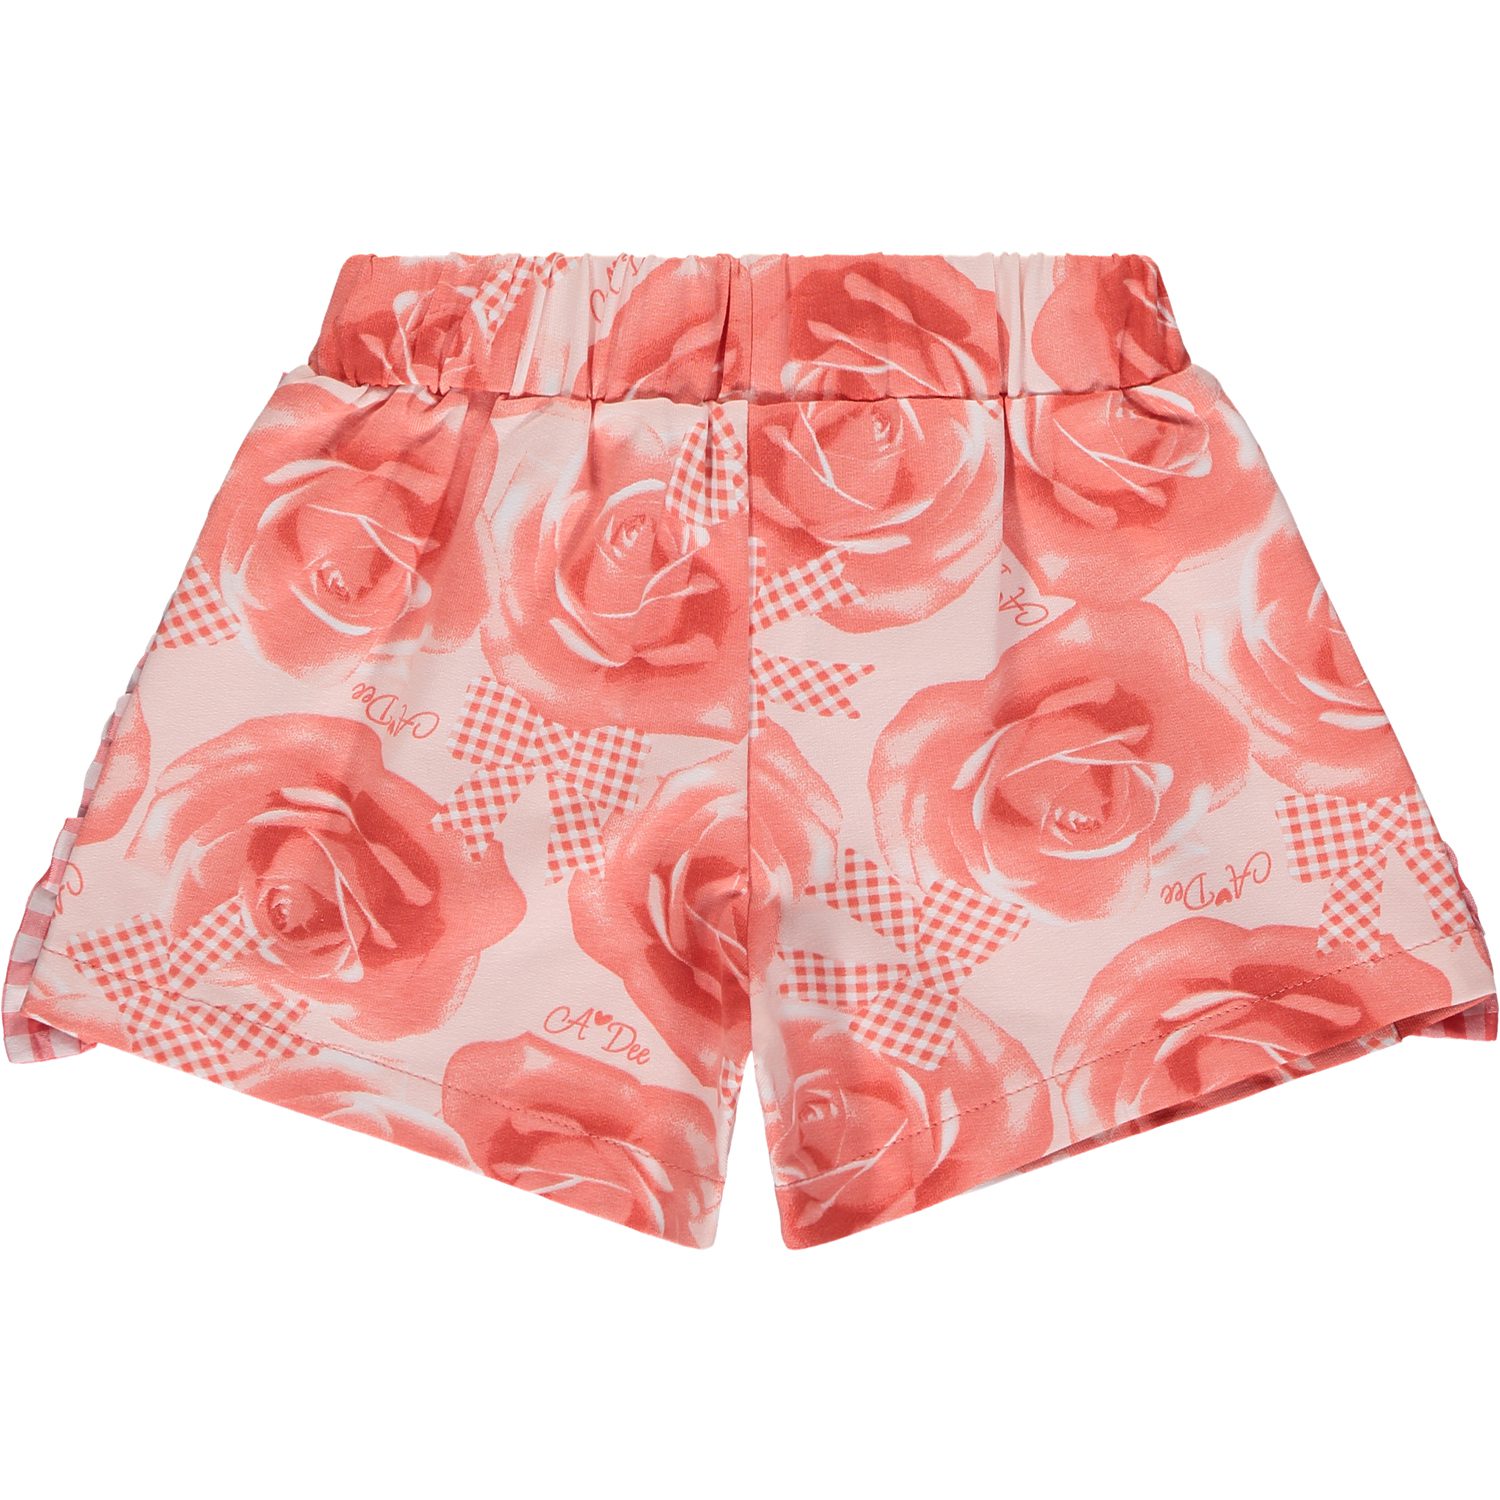 A’dee Yana korte broek en top met rozenprint broek achter